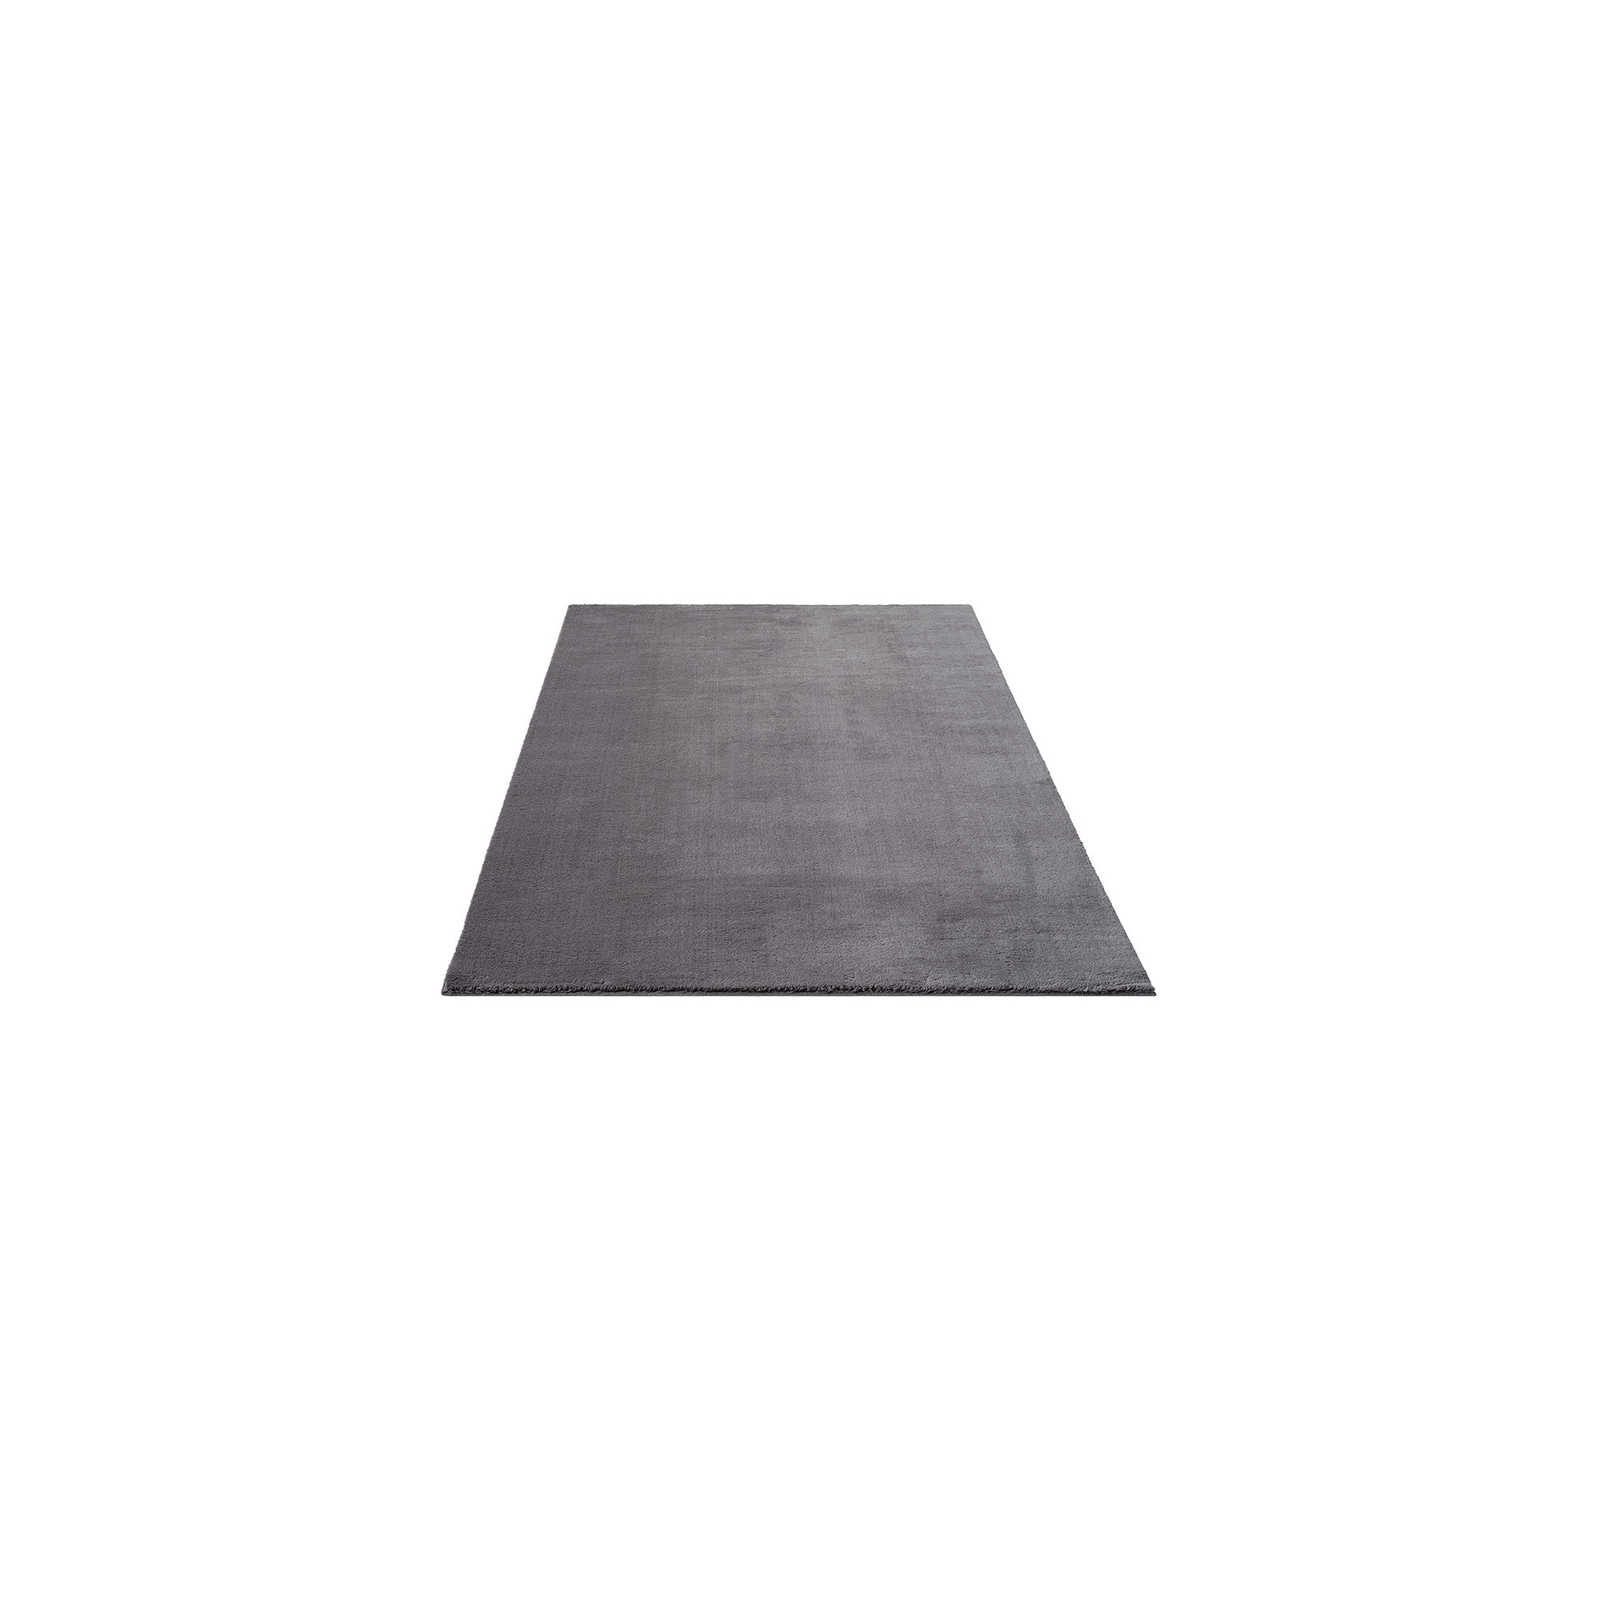 Flauschiger Hochflor Teppich in Anthrazit – 150 x 80 cm
